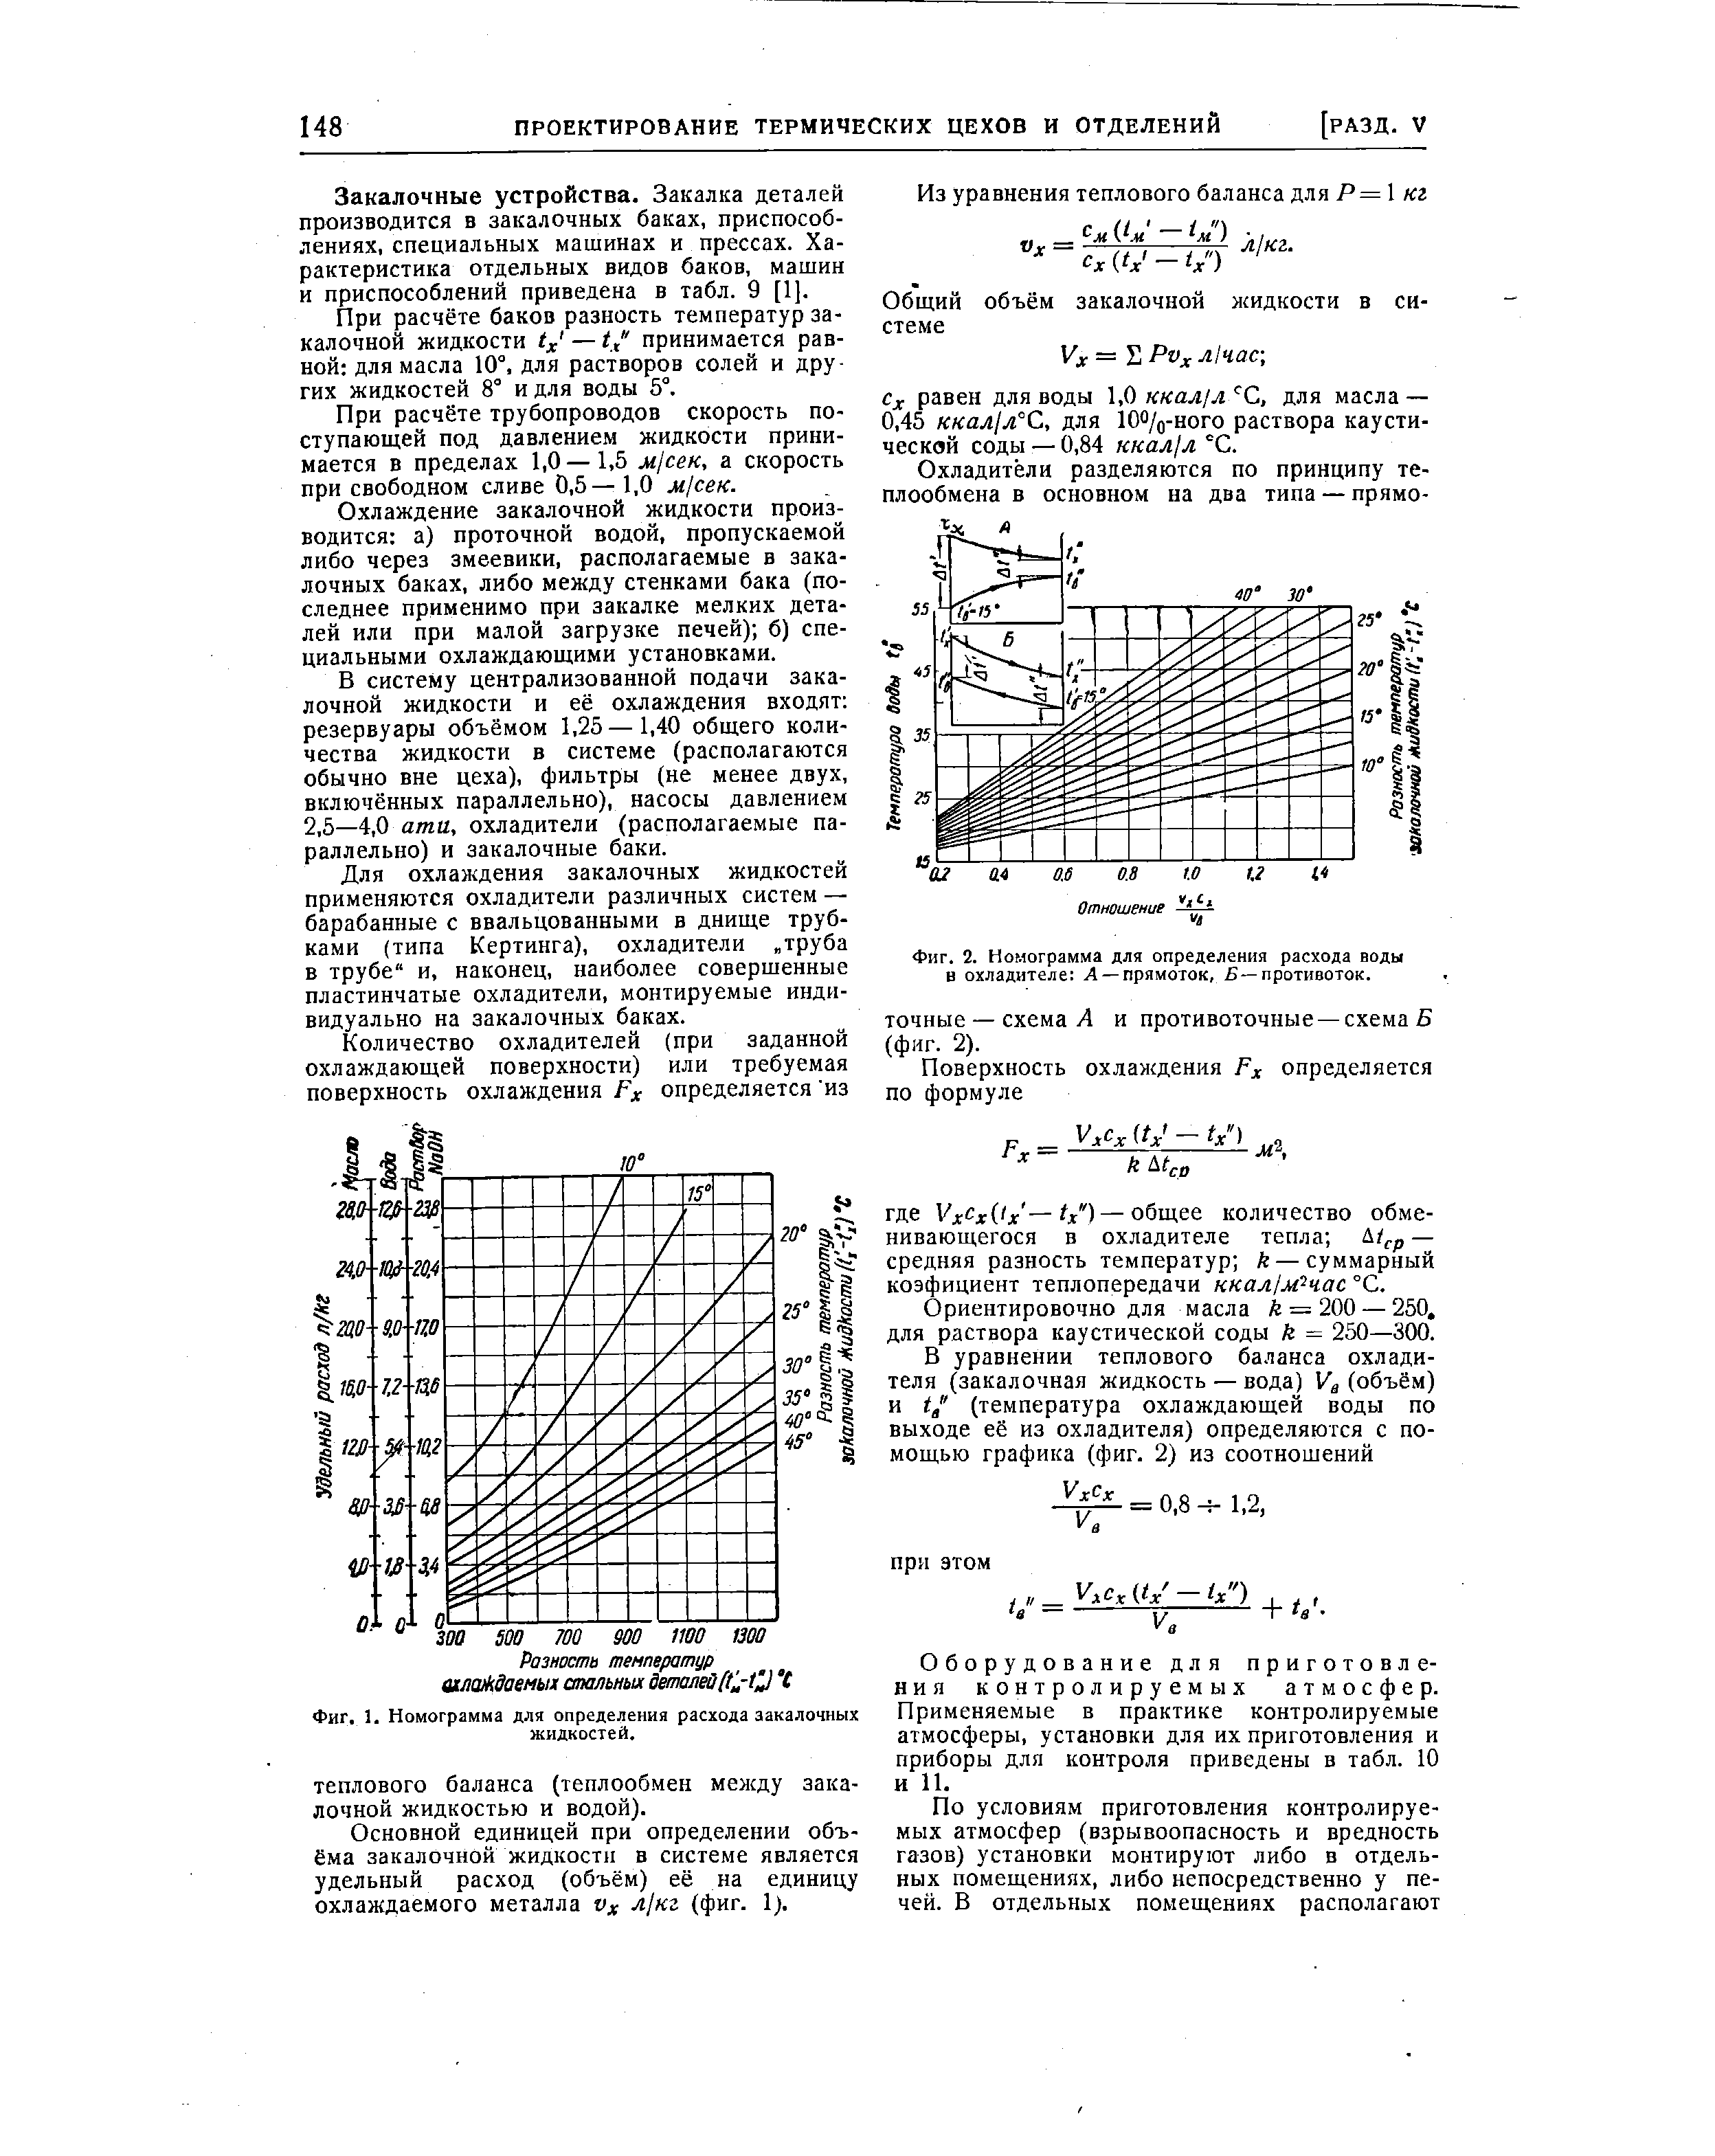 Фиг. 2. Номограмма для определения расхода воды в охладителе Л —прямоток, -противоток.